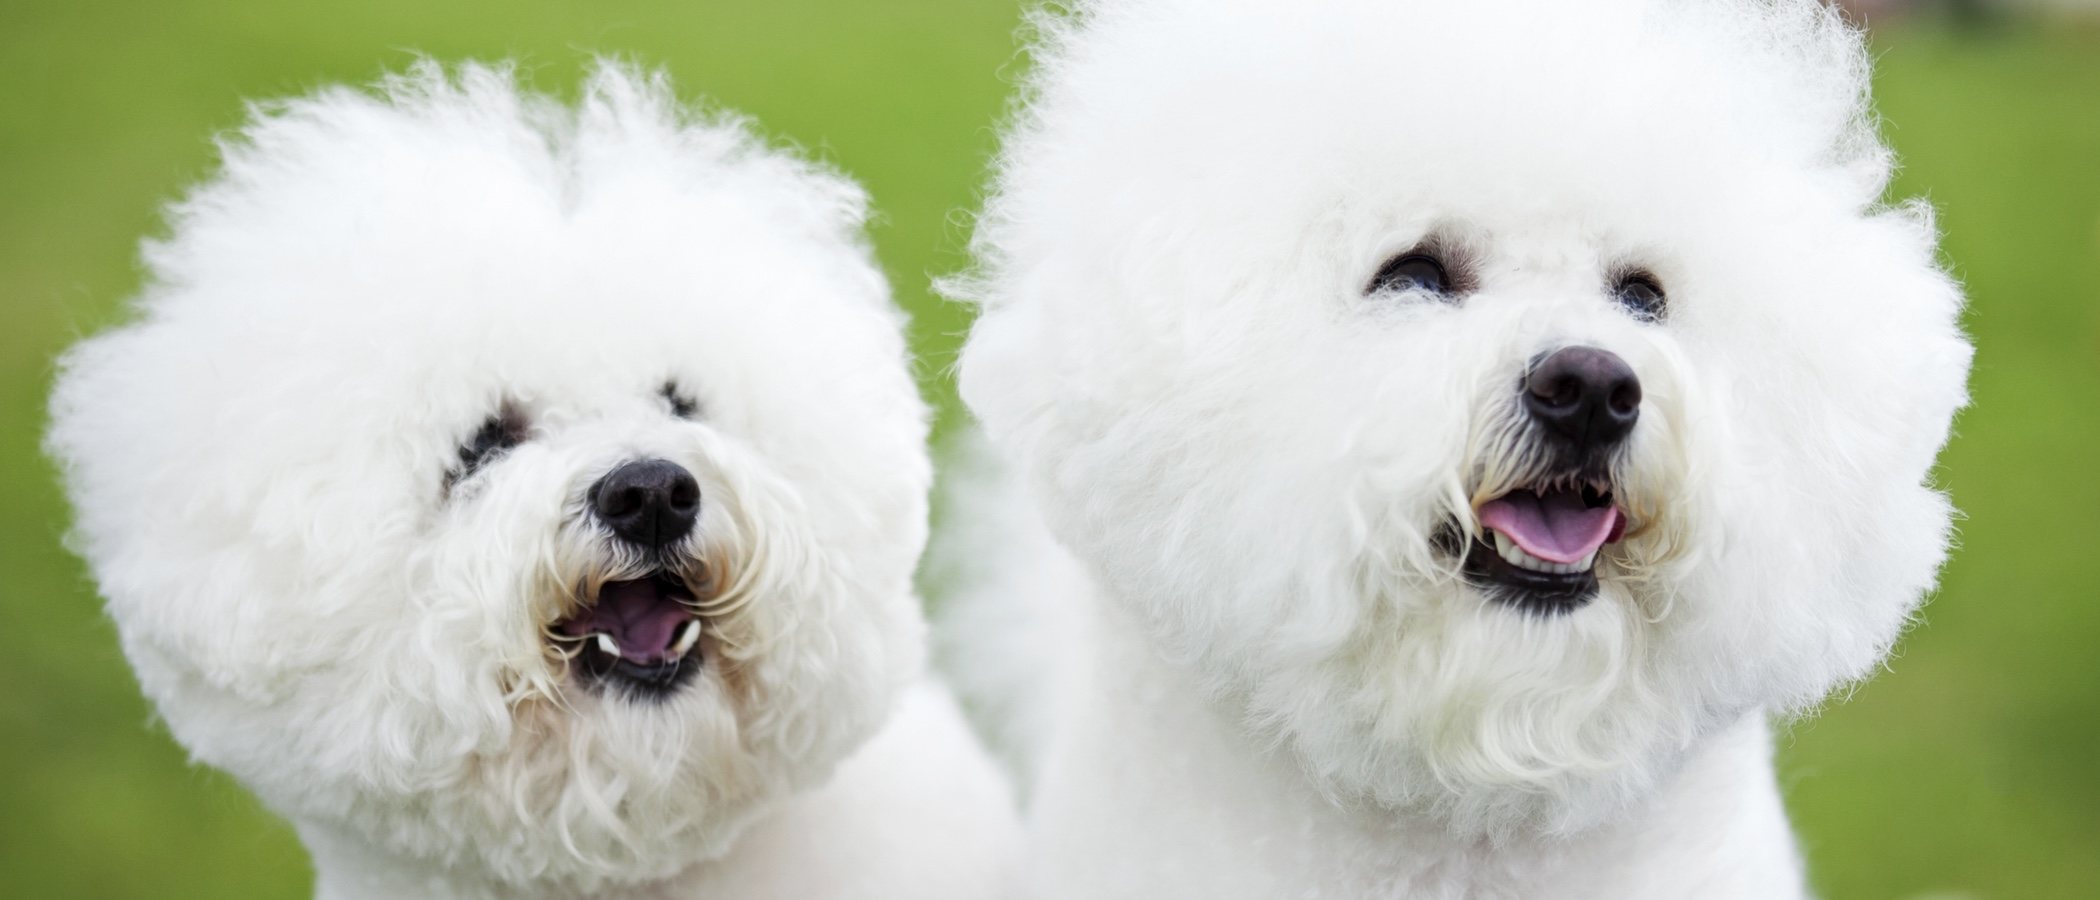 Tarjeta en blanco de cumpleaños Bichon Frise blanca cachorro perro tarjeta  de saludos correo gratuito  eBay